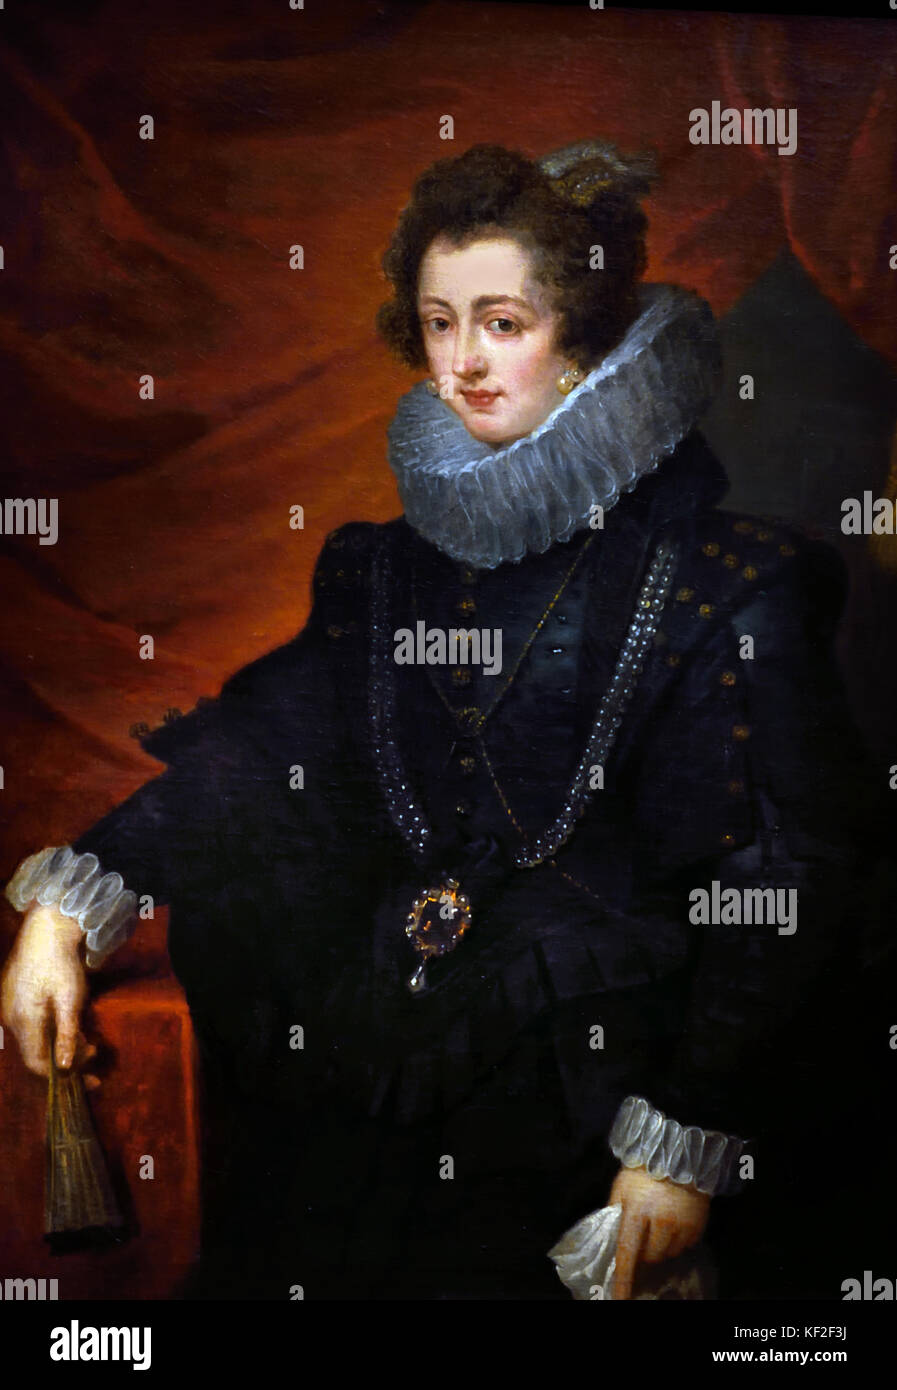 Elisabeth von Frankreich 1602 - 1644 Königin von Spanien Frau von König Philipp IV. von Spanien. Peter Paul Rubens (1577-1640) Maler in der flämischen Barockmalerei Tradition. Antwerpen, Antwerpen, Belgien, Stockfoto